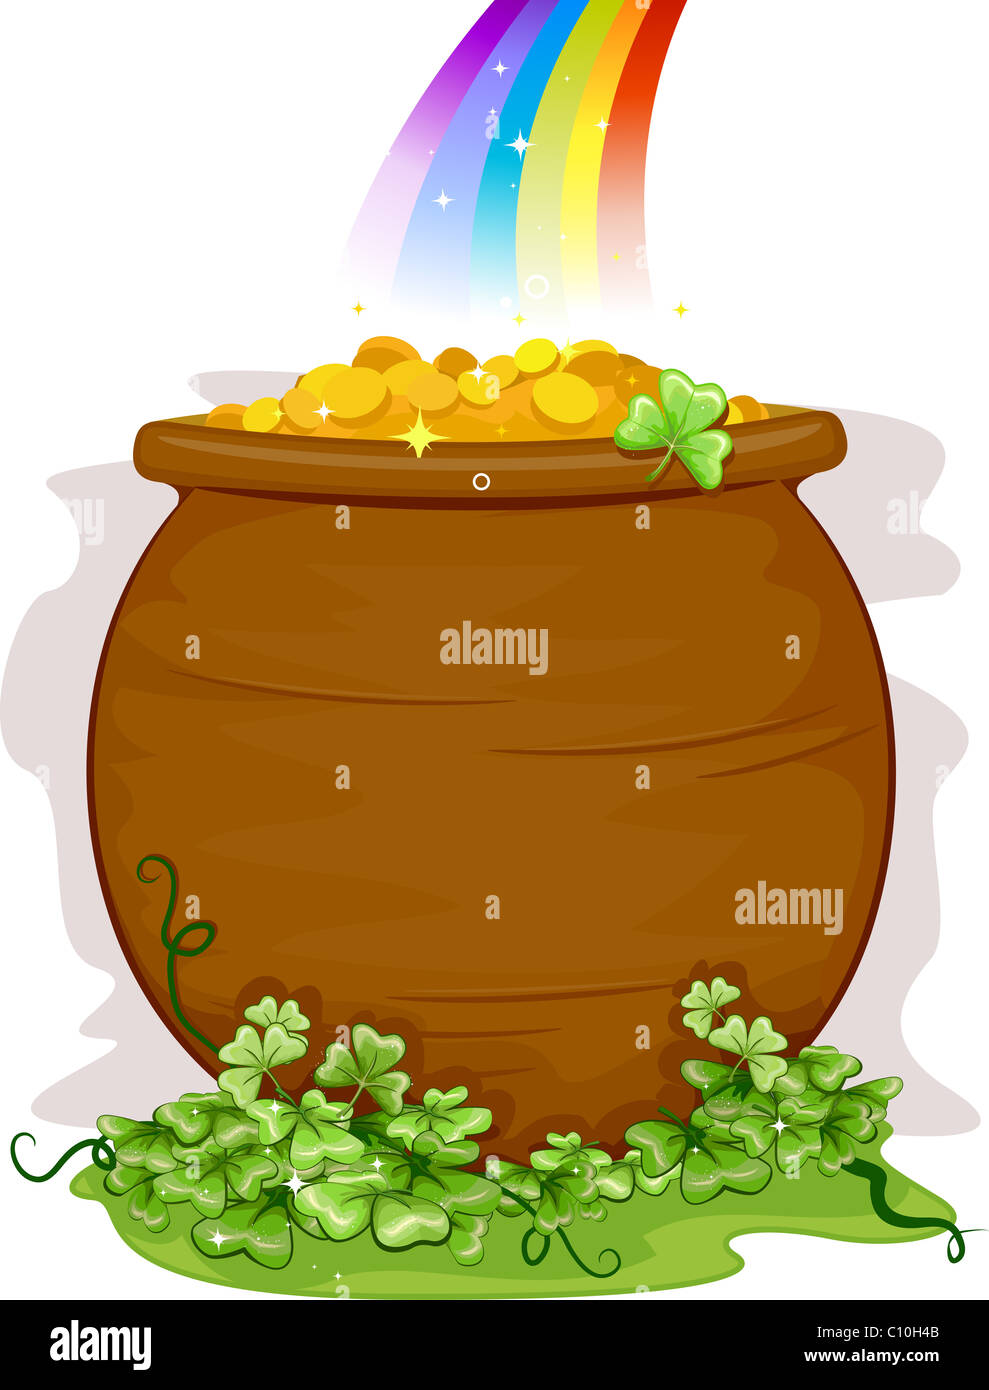 Ilustración de una olla de oro al final del arco iris de fondo Foto de stock